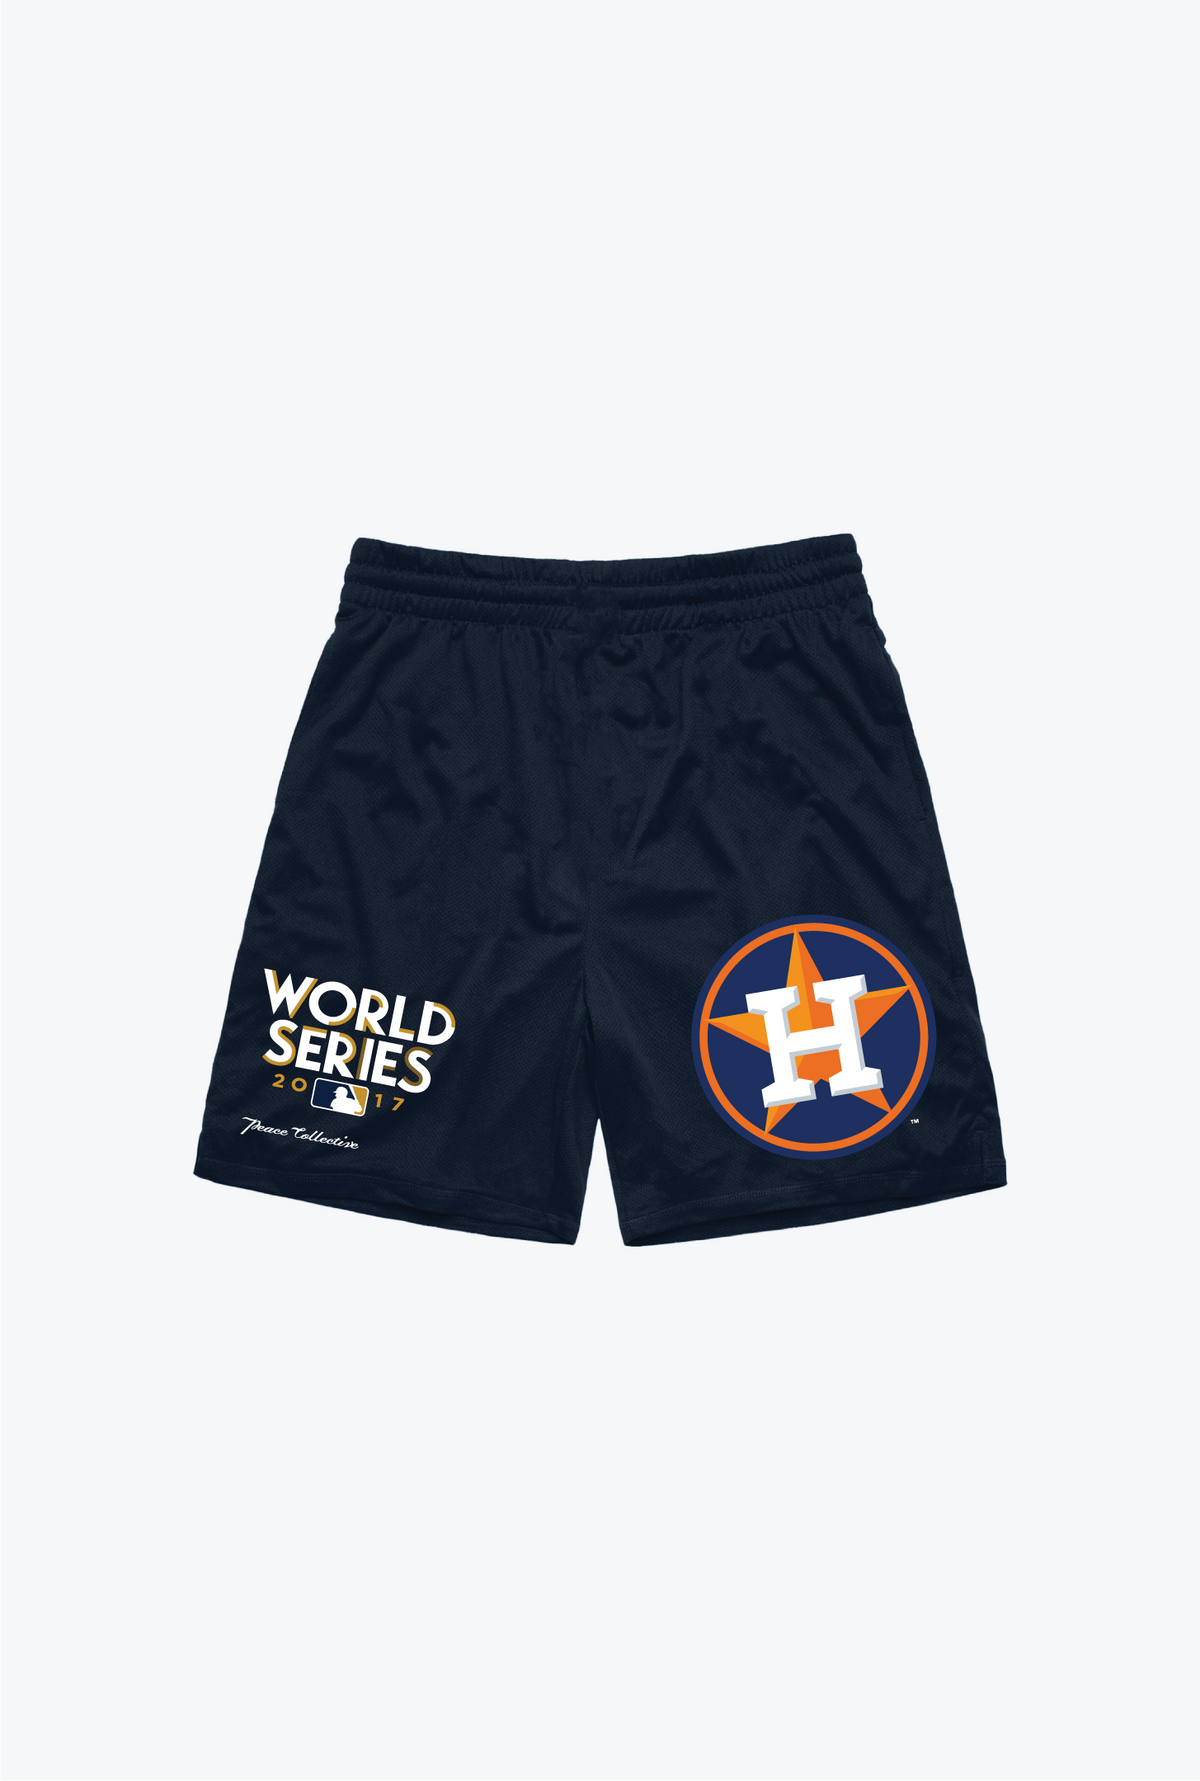 Houston Astros 2017 World Series Mesh Shorts - Navy